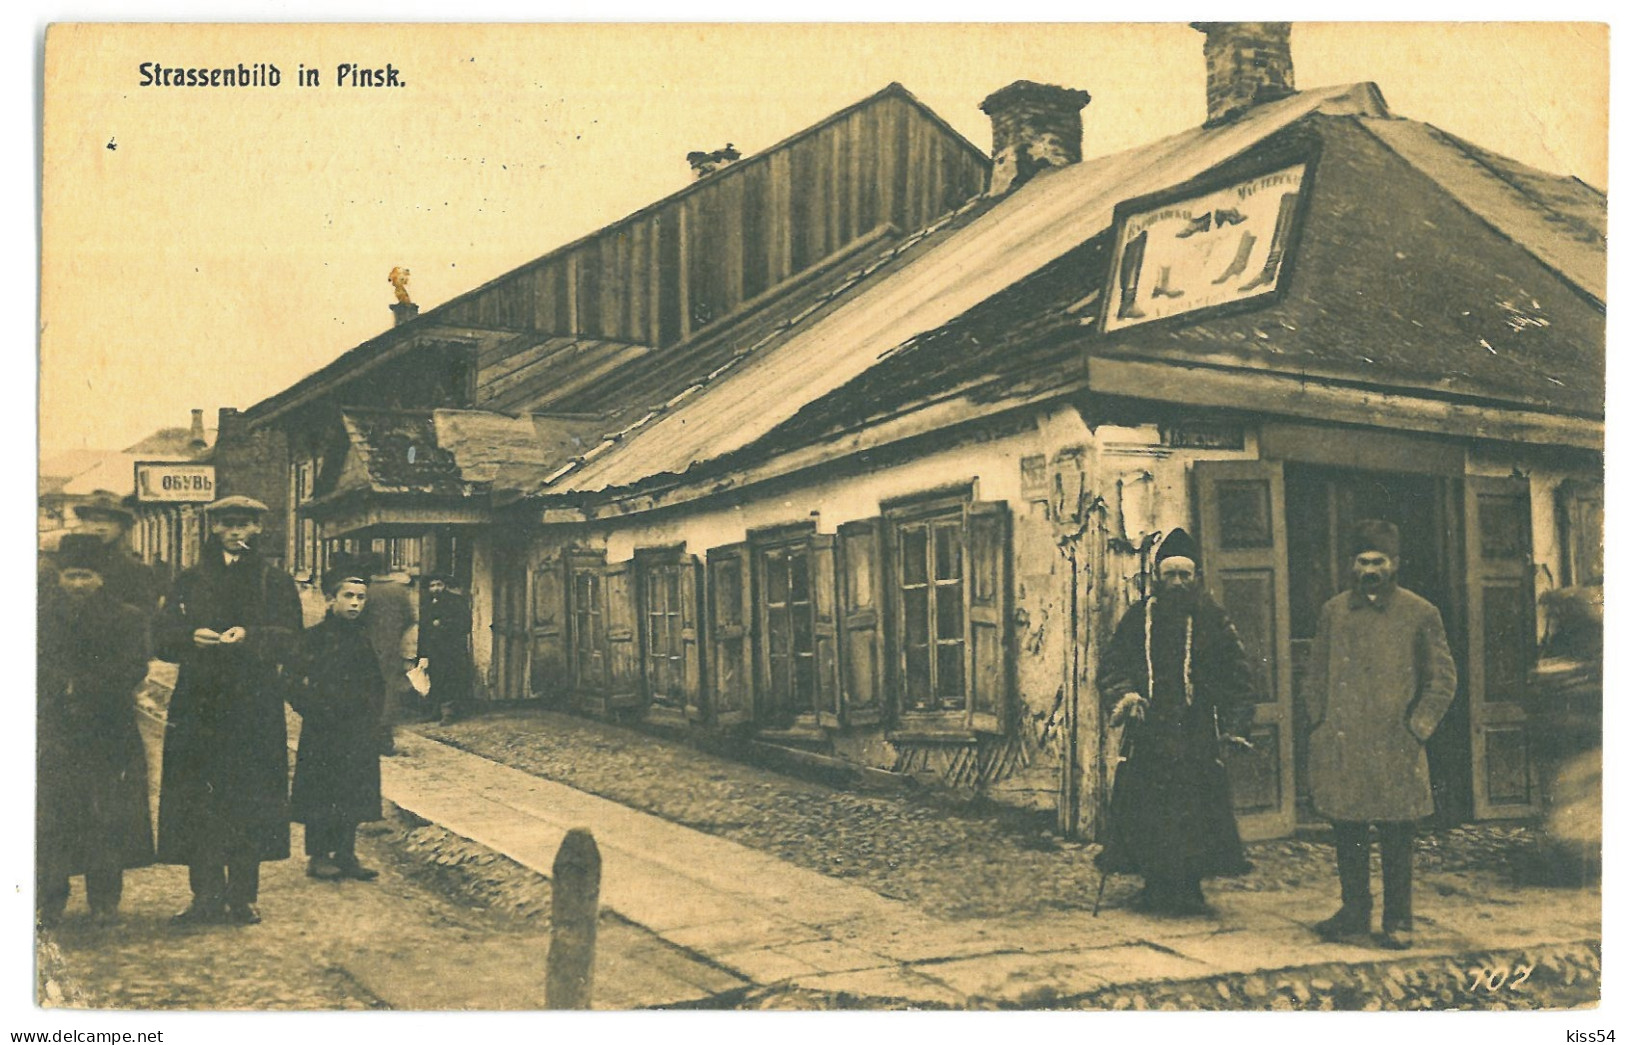 BL 40 - 23585 PINSK, Shoemaker, Street Stores Belarus - Old Postcard, CENSOR - Used - 1916 - Weißrussland